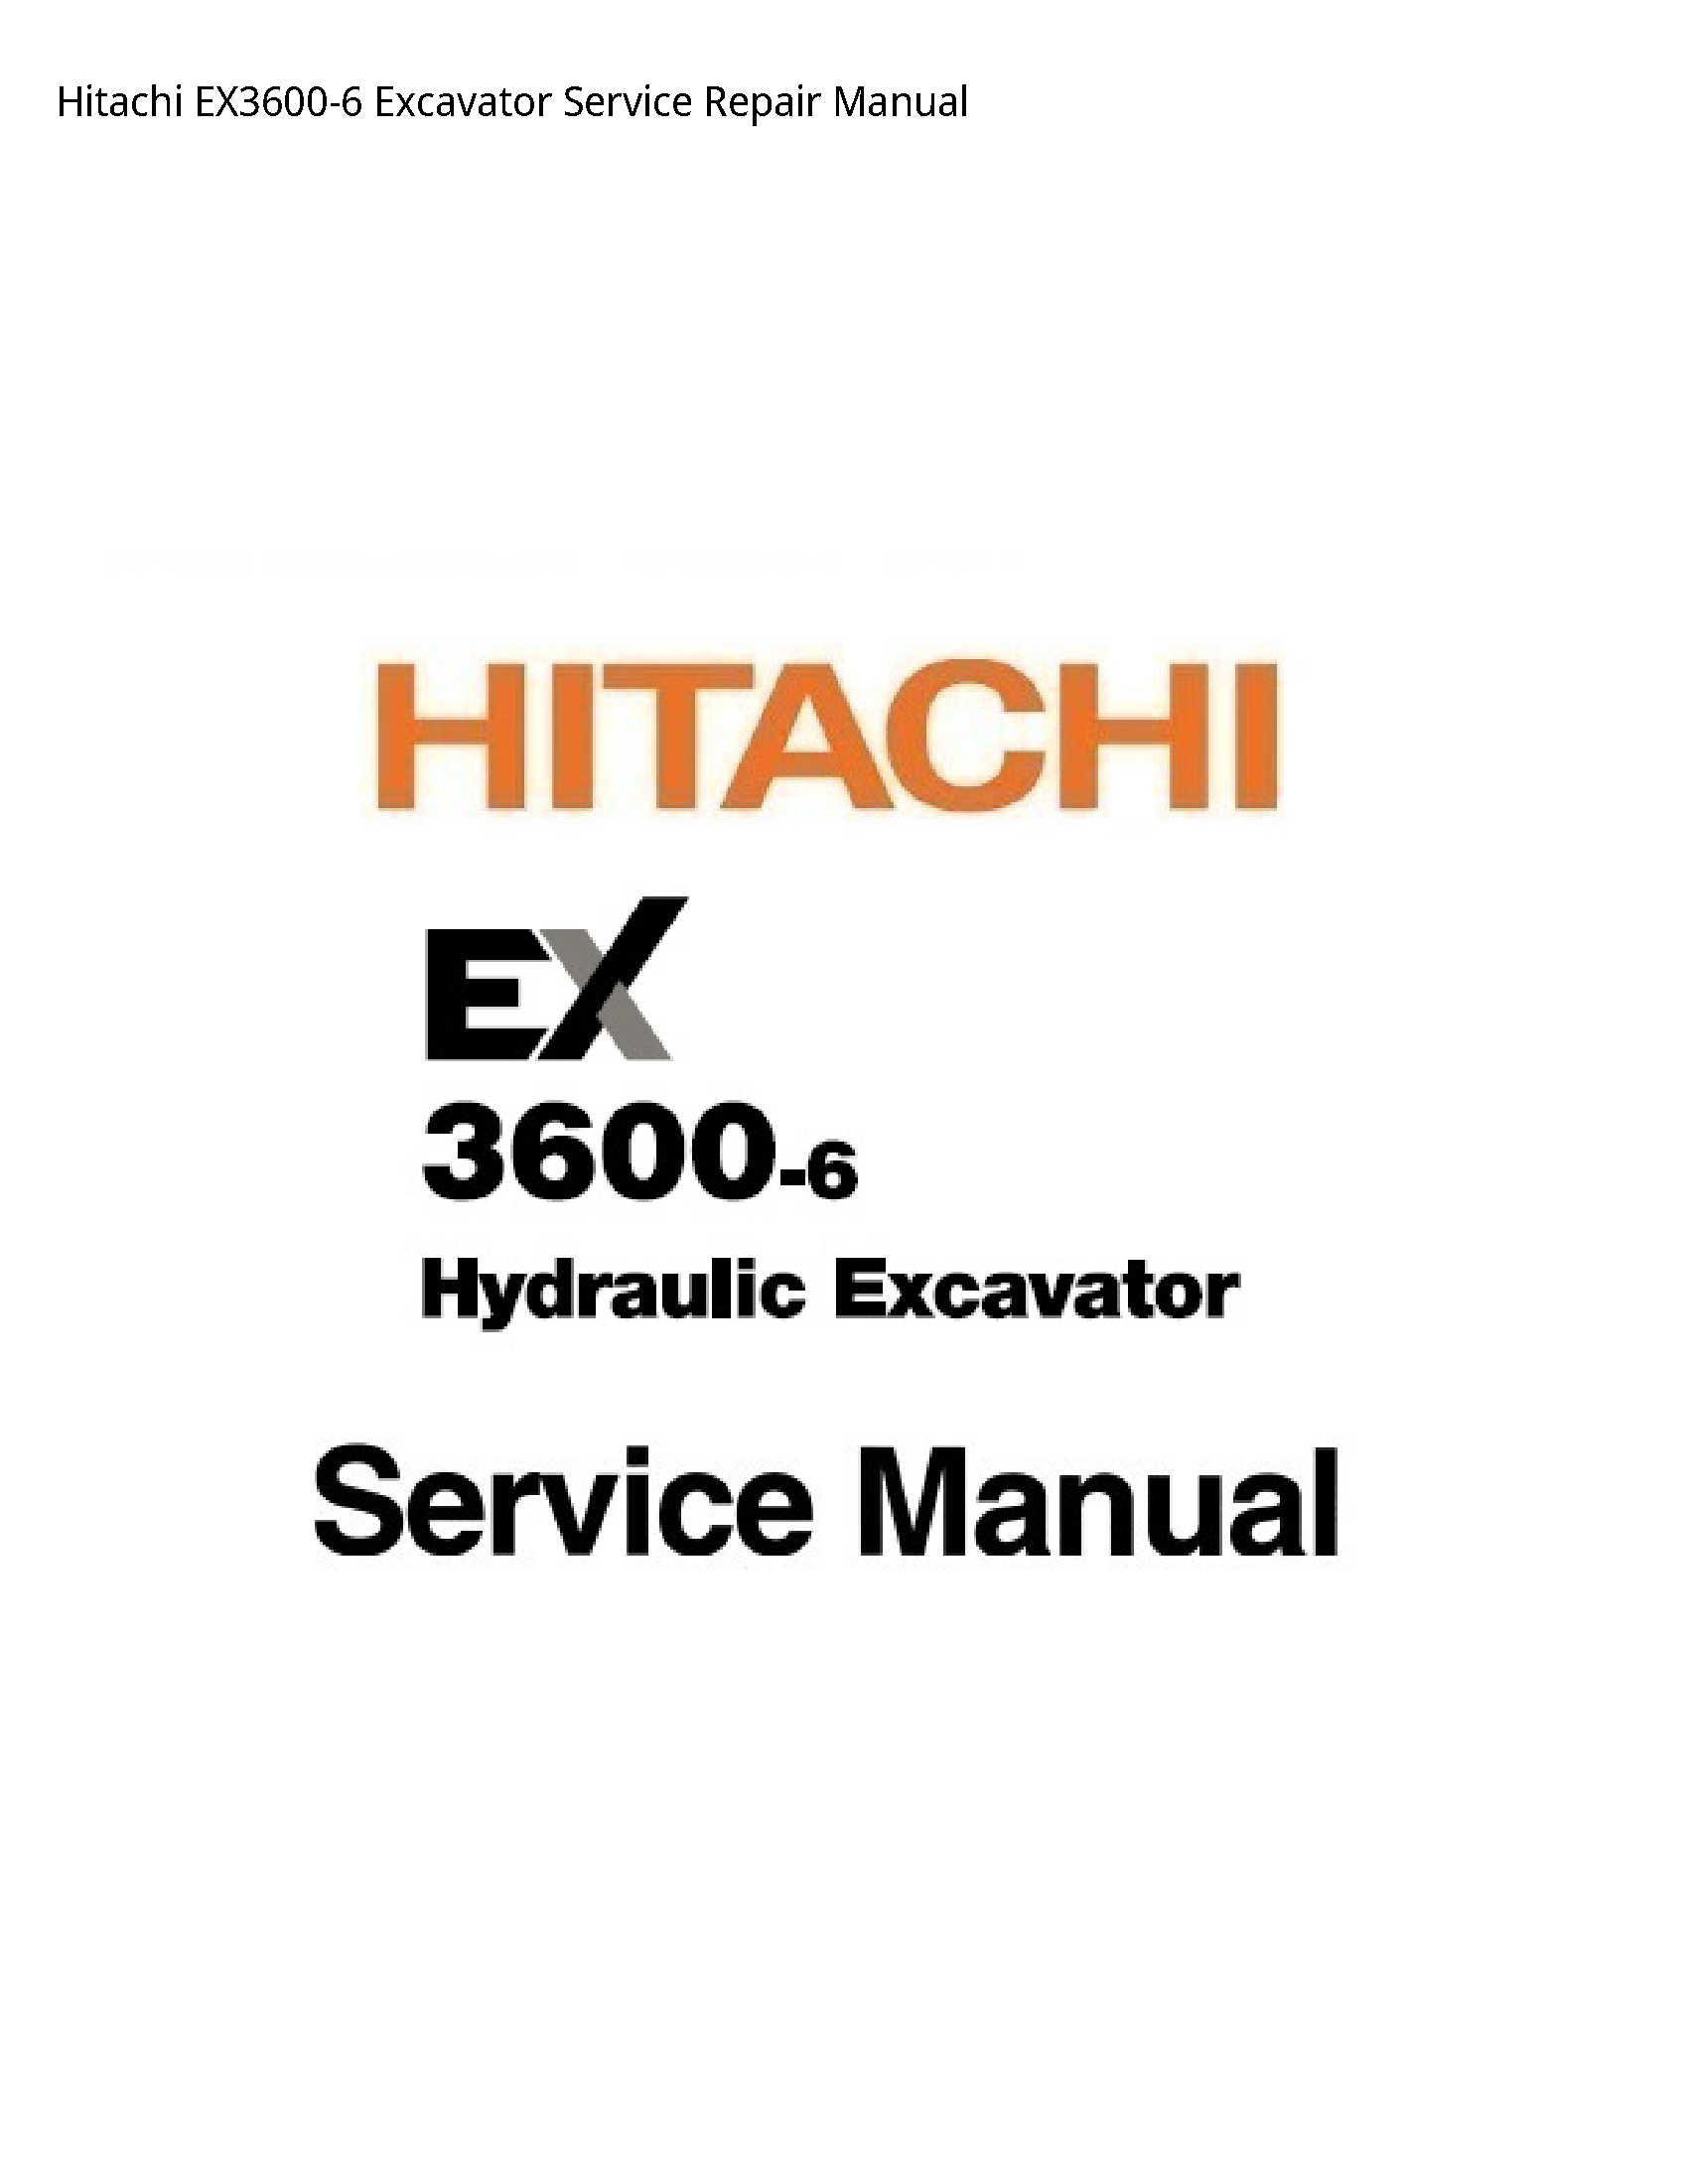 Hitachi EX3600-6 Excavator manual